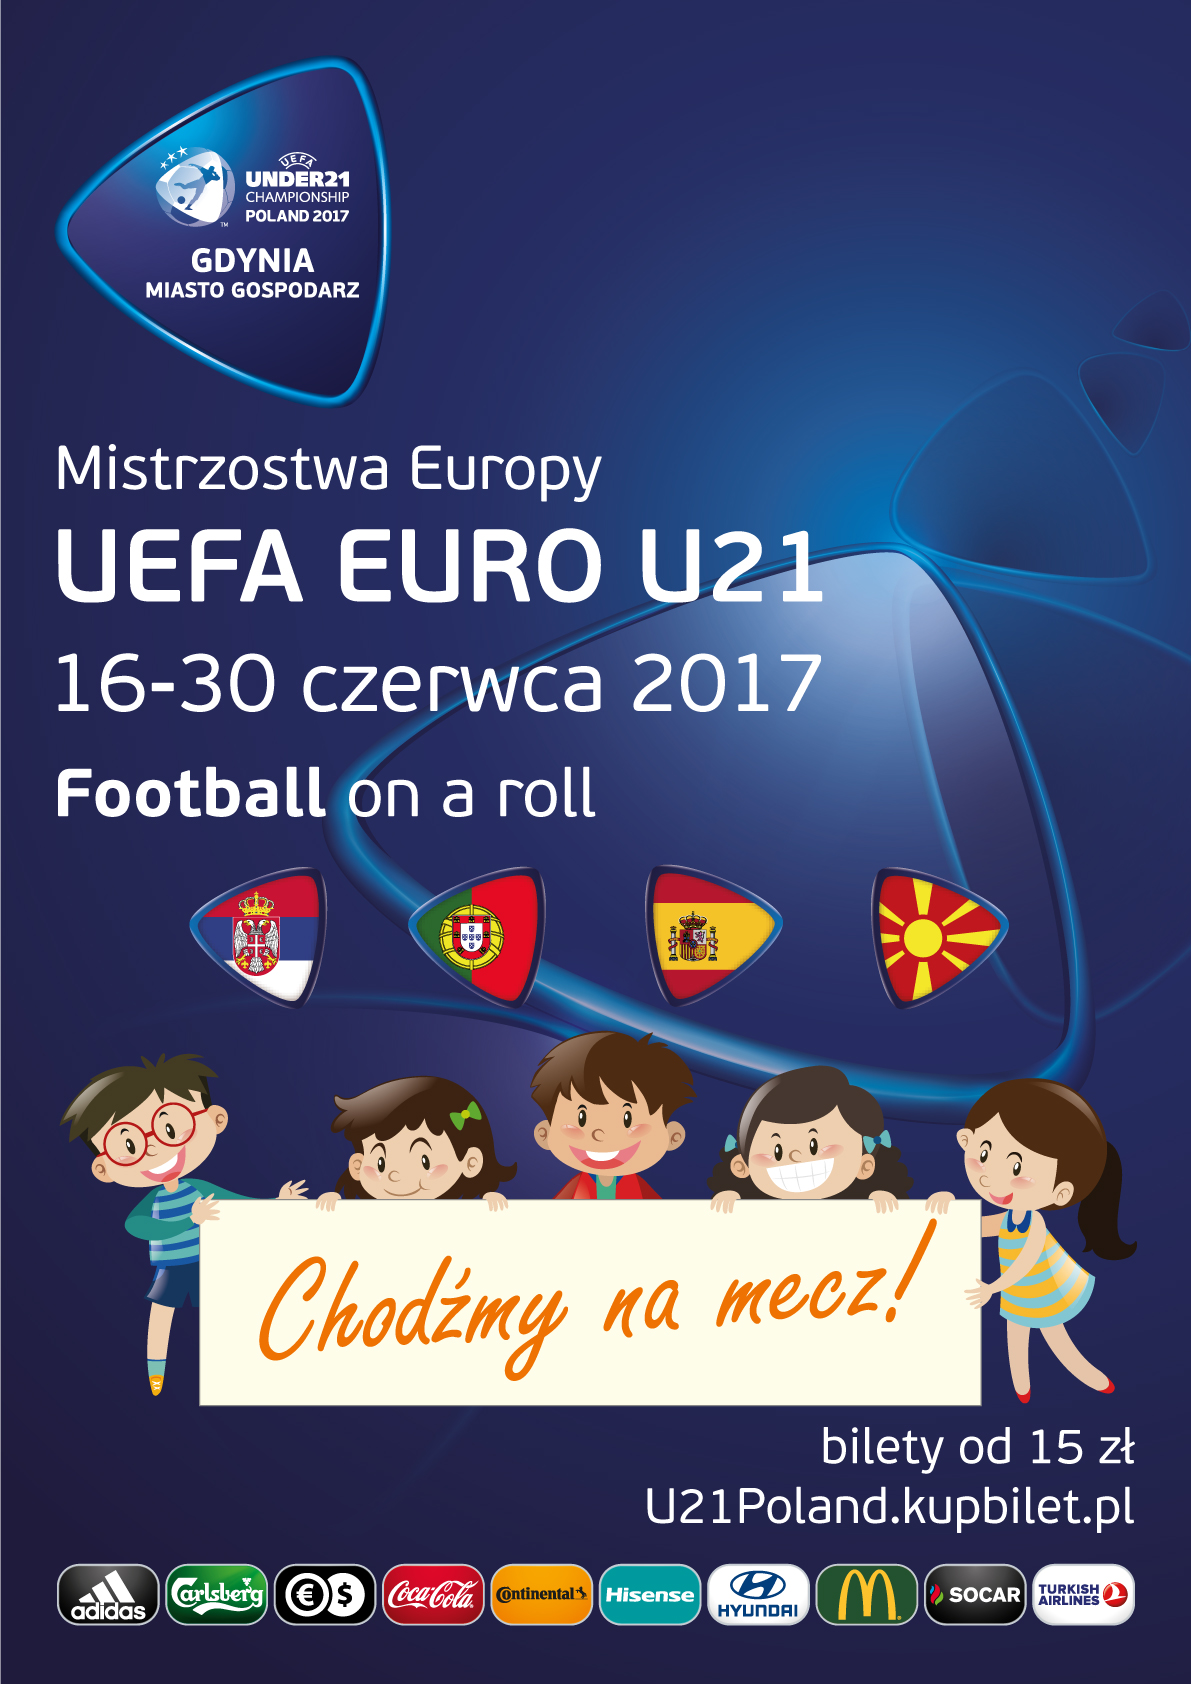 Mistrzostwa Europy UEFA EURO U21 w Gdyni!